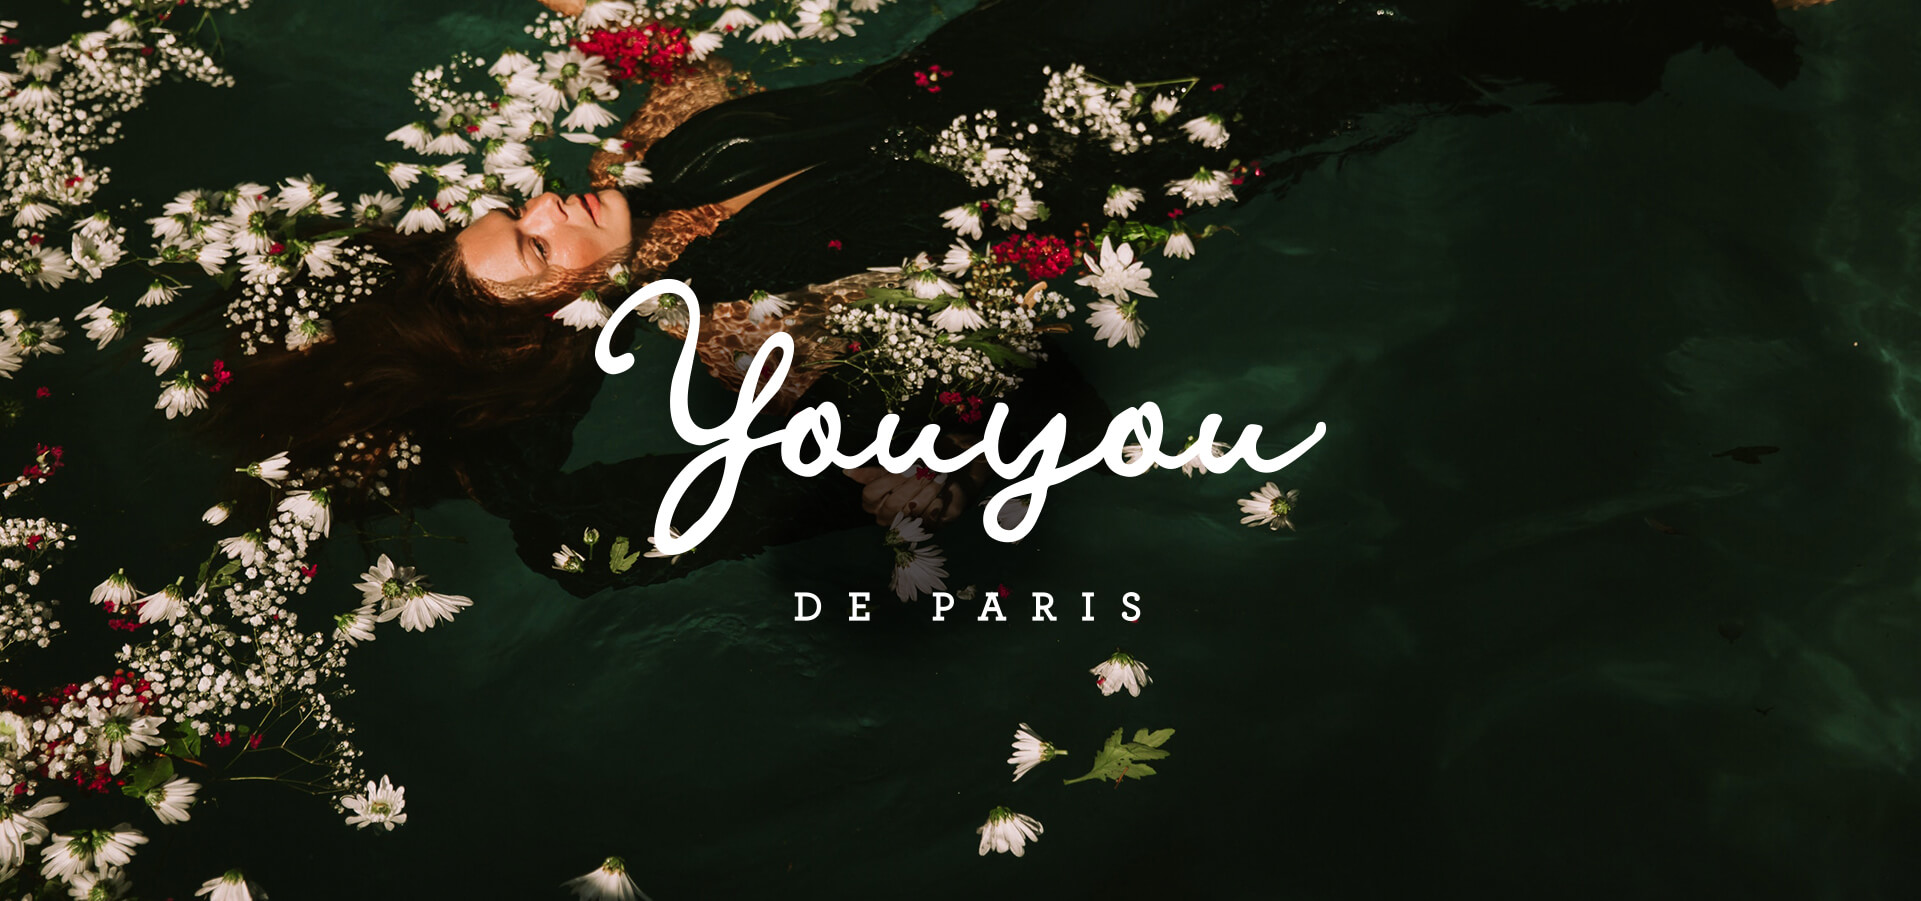 Youyou de Paris logo